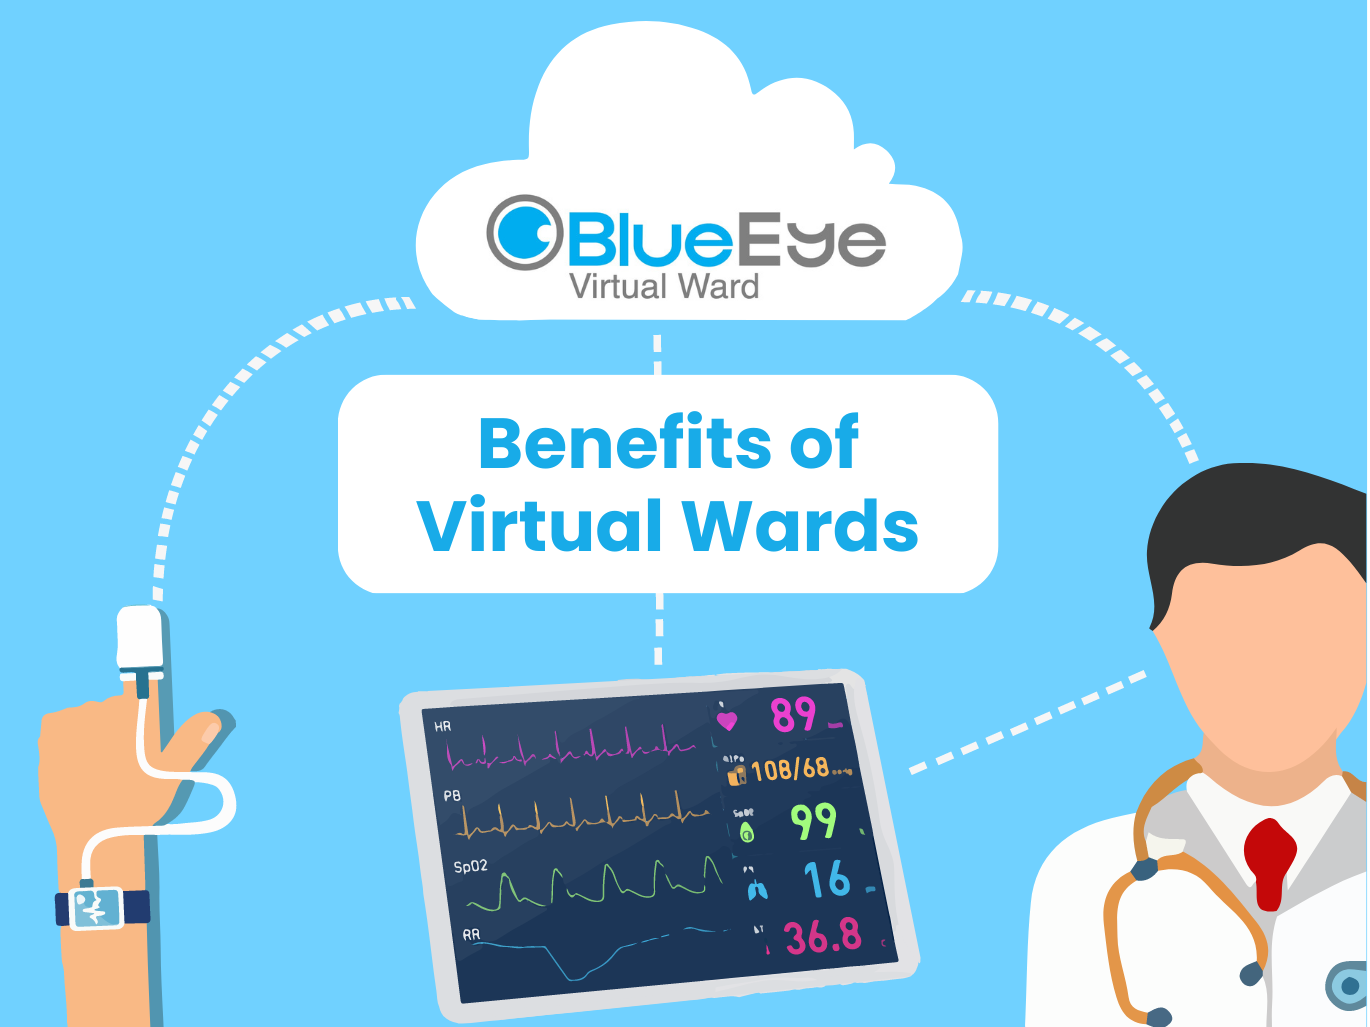 Benefits of Virtual wards